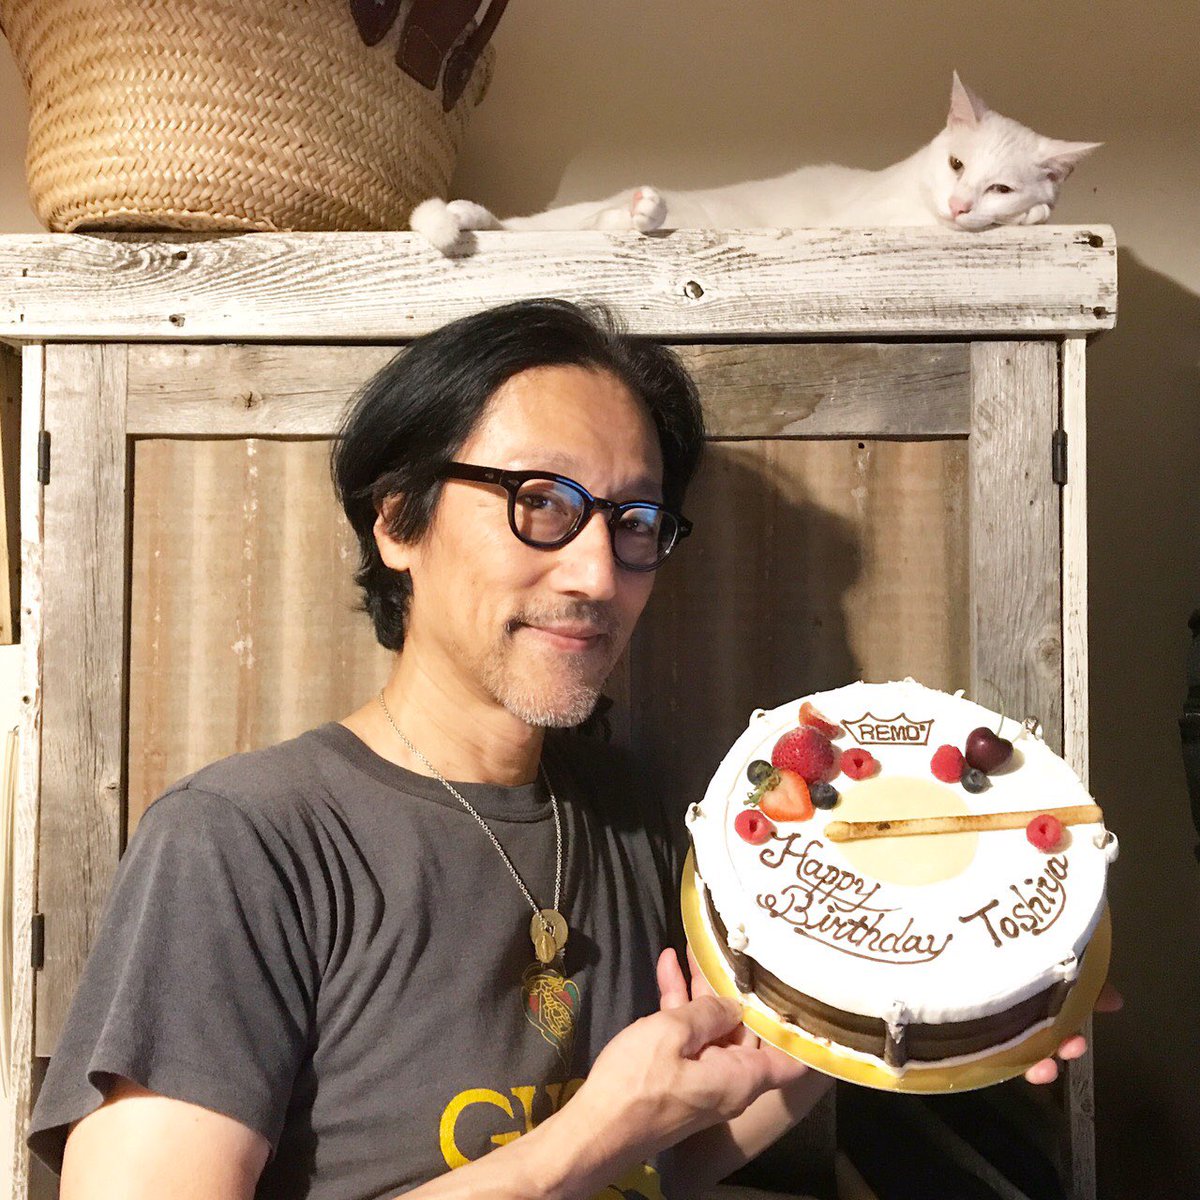 松永俊弥 Twitter પર 昨日 美里さんのリハで誕生日のお祝いをしていただきました スネアドラムのケーキです ありがとうございました